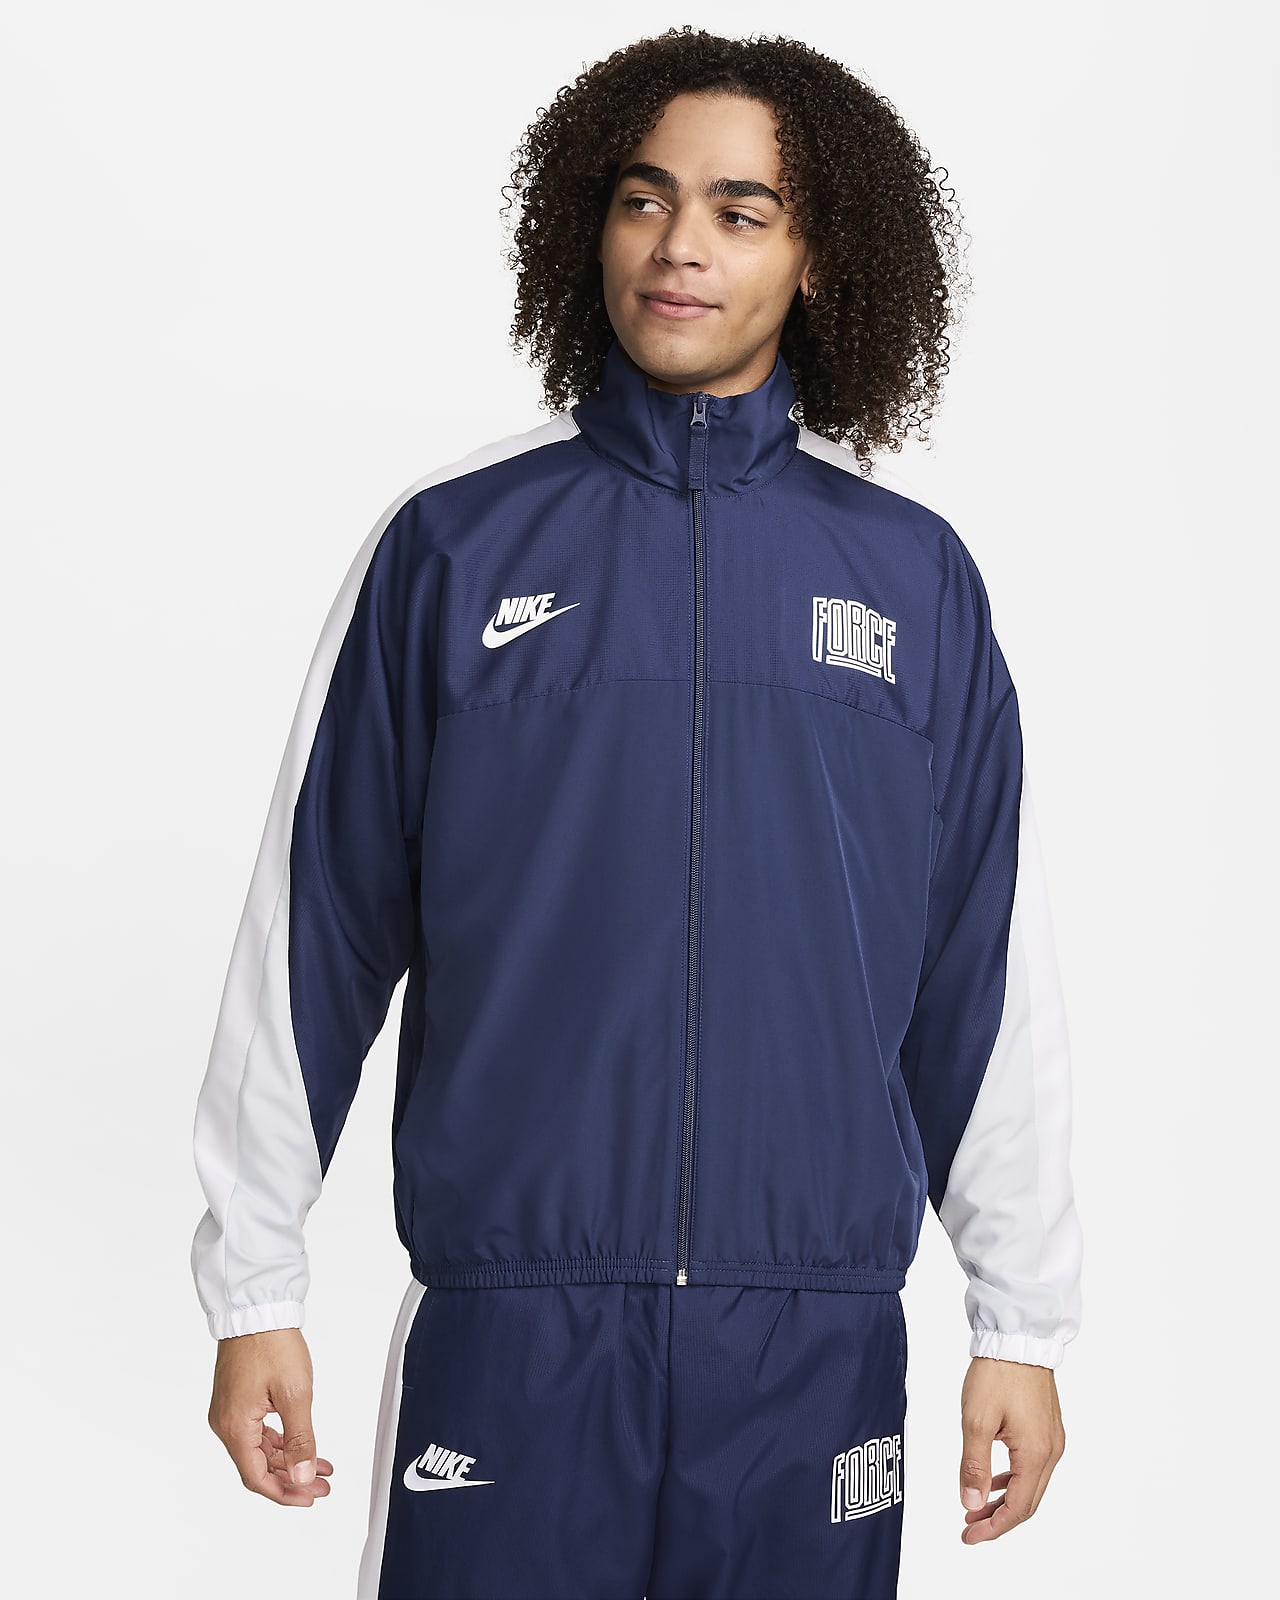 Nike Starting 5 Men's Basketball Jacket